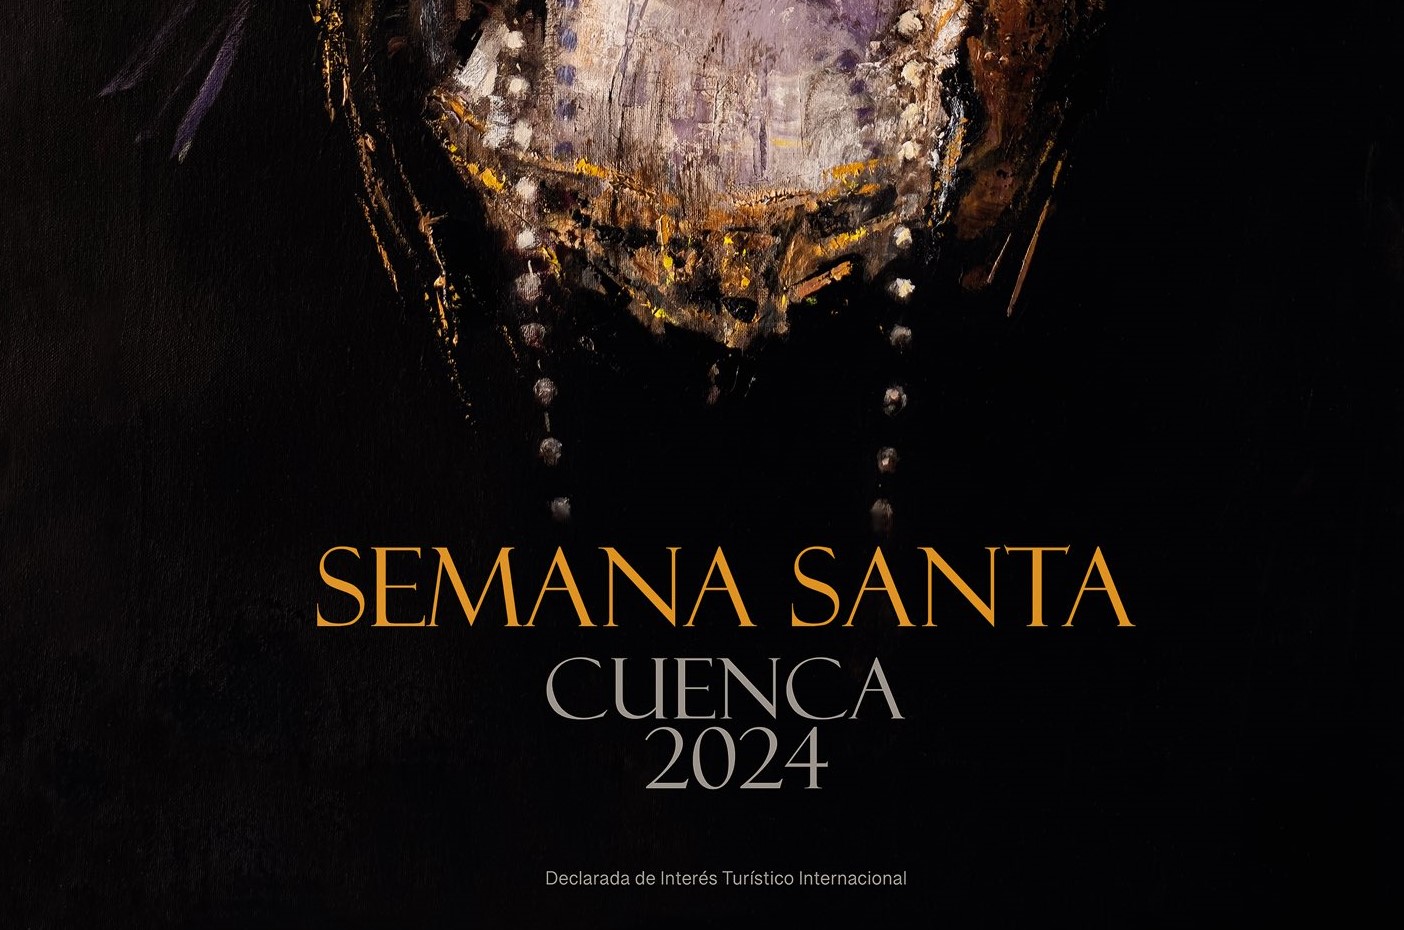 Cartel de la Semana Santa de Cuenca 2024 diseñado por el artista José María Albareda. Seguro colectivo de accidentes.